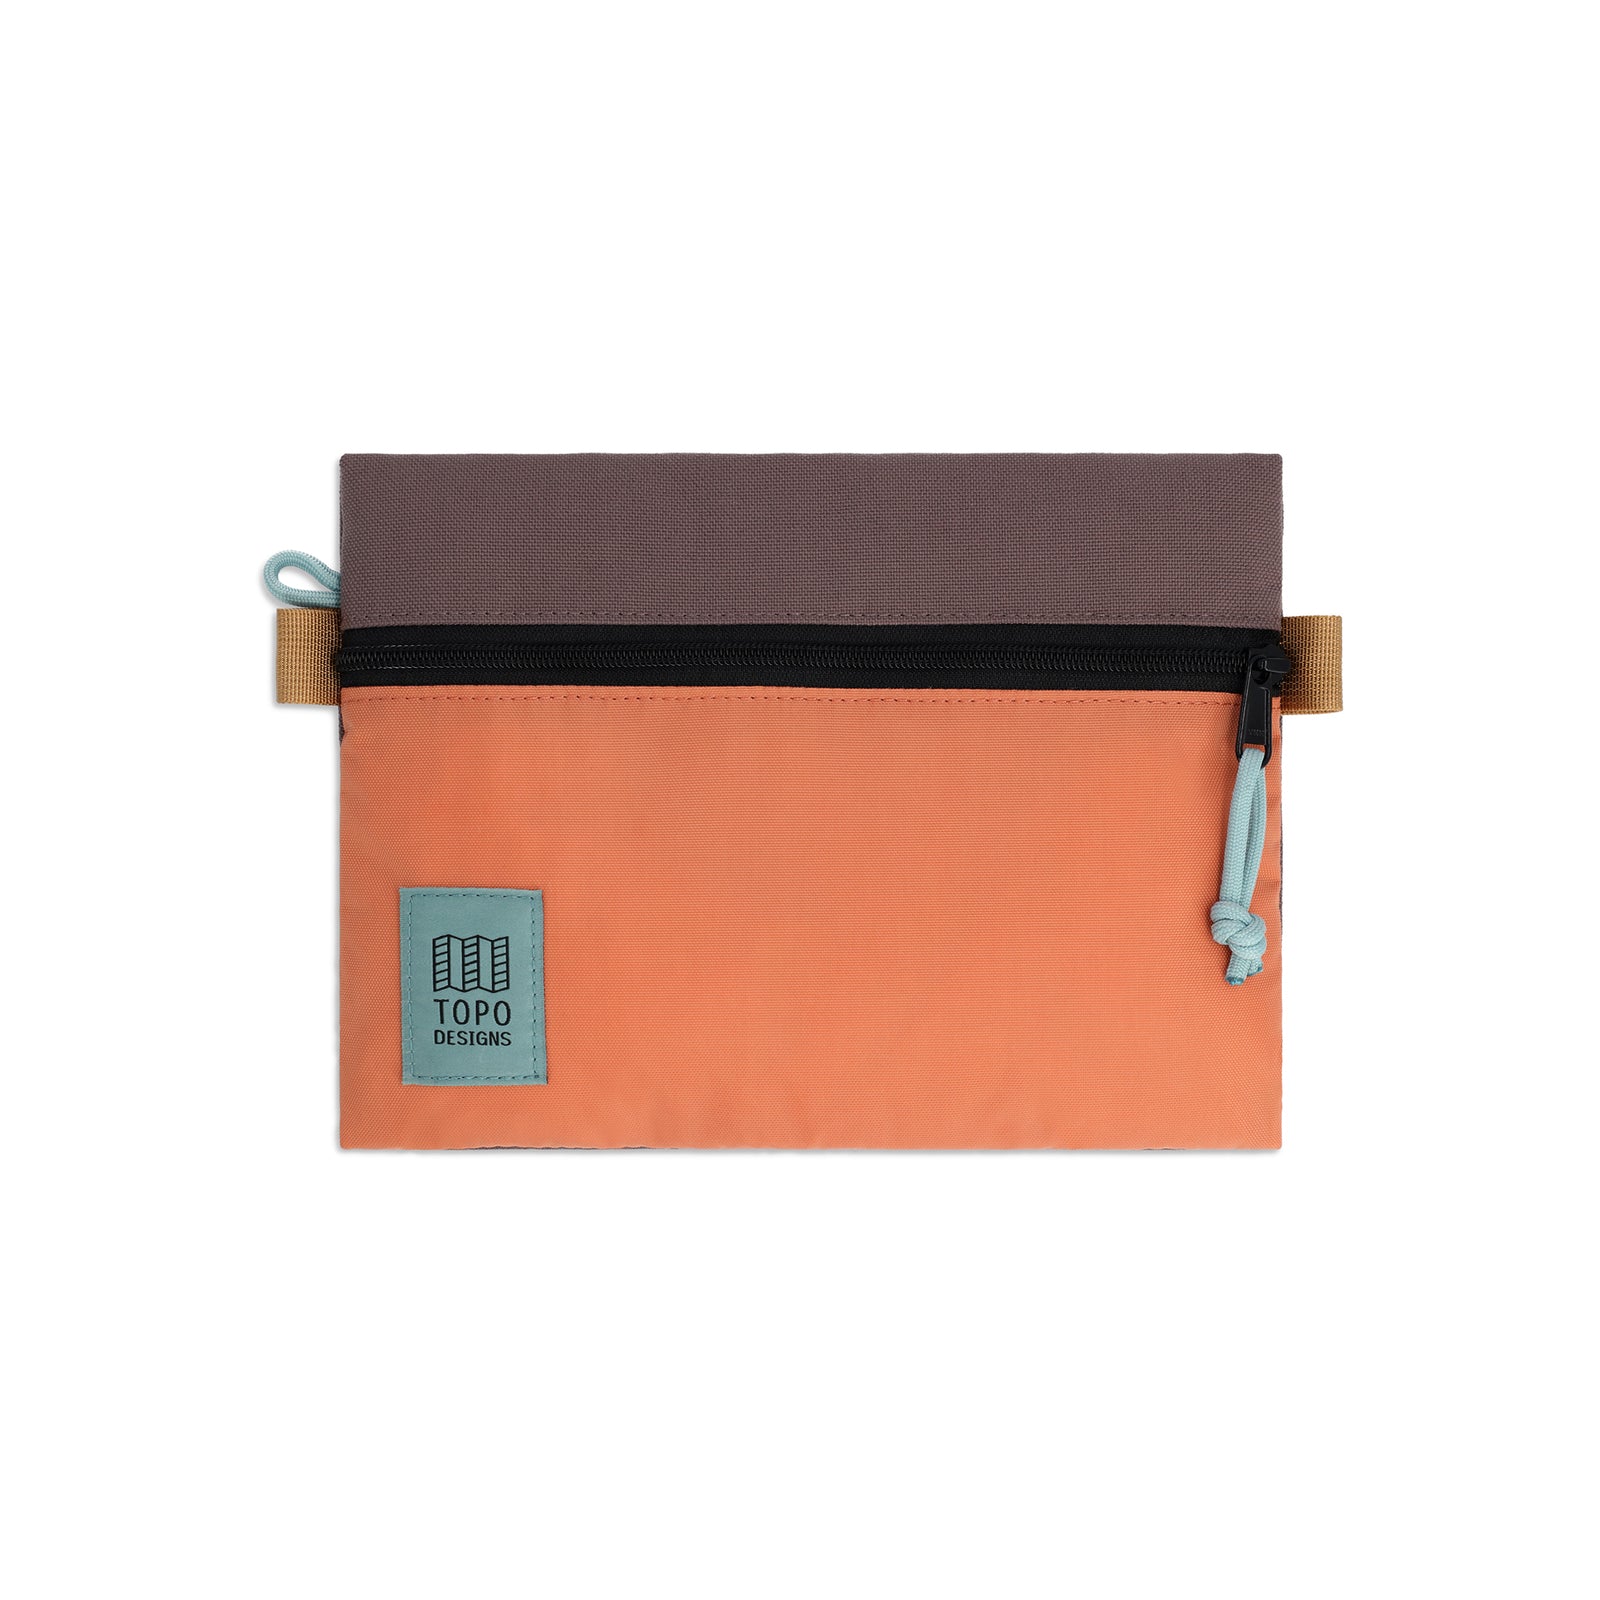 Topo Designs Accessory Bag "Medium" in "Coral / Peppercorn"